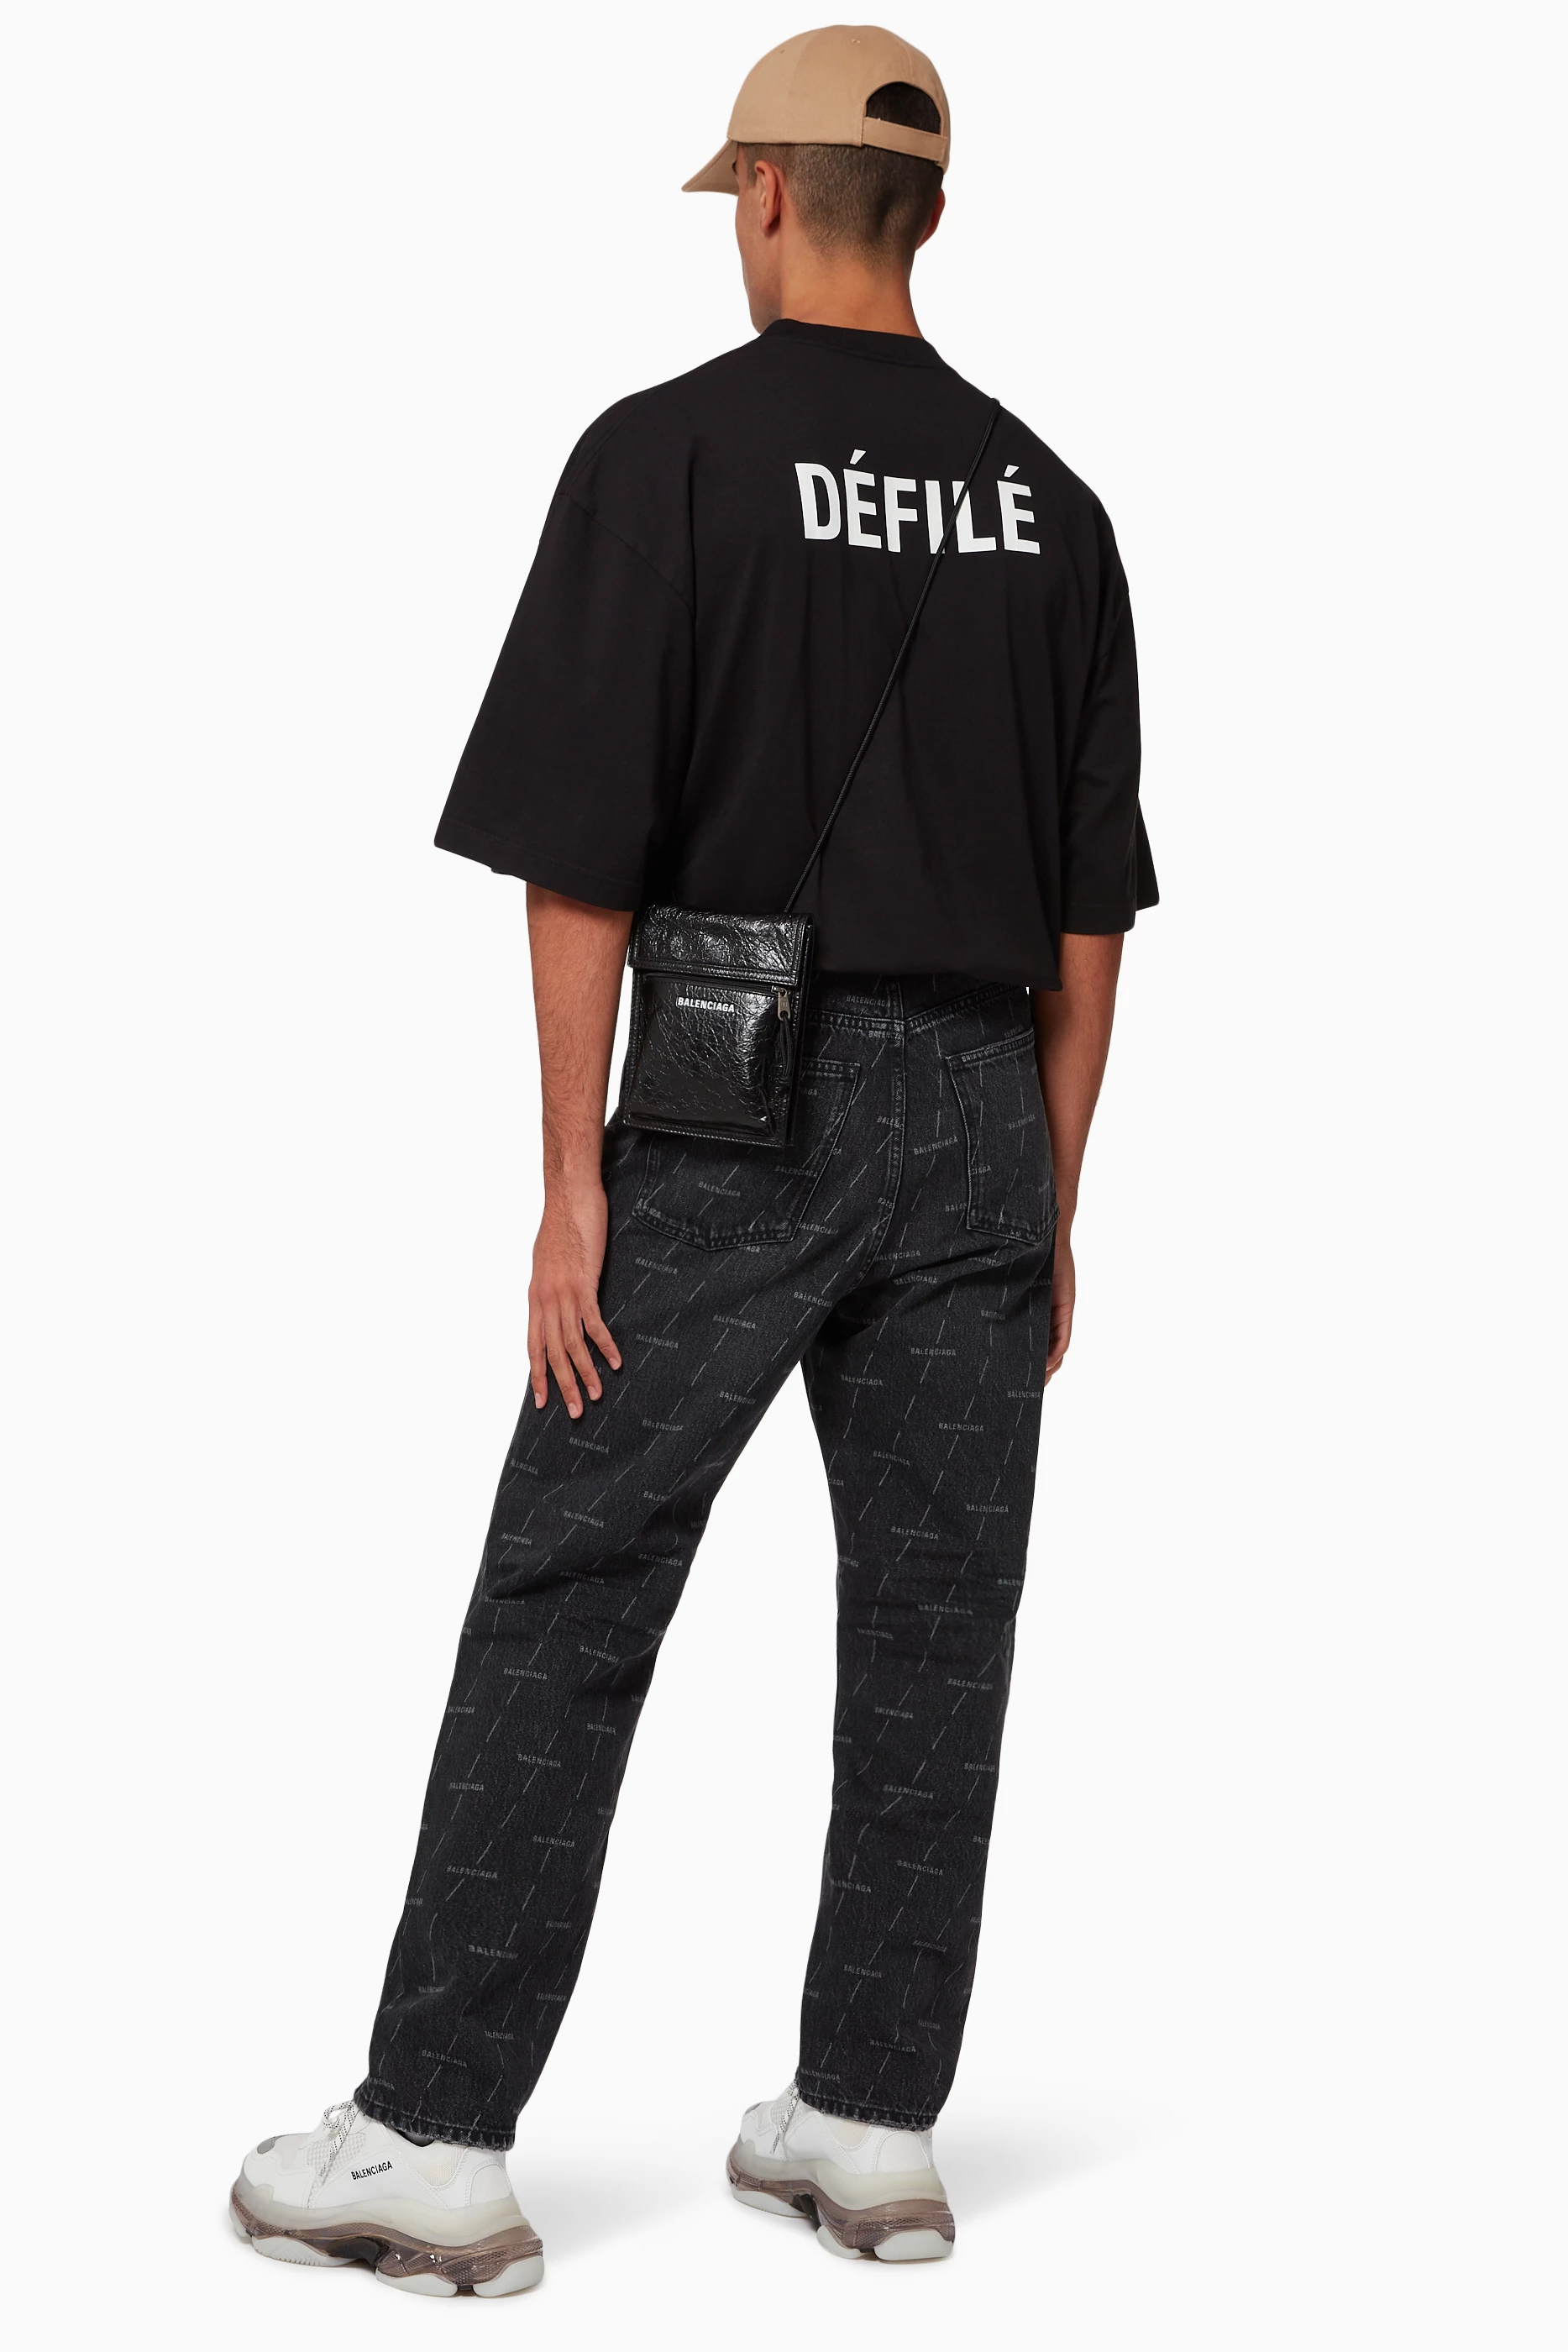 Balenciaga Defile XL Fit T Shirt in Black